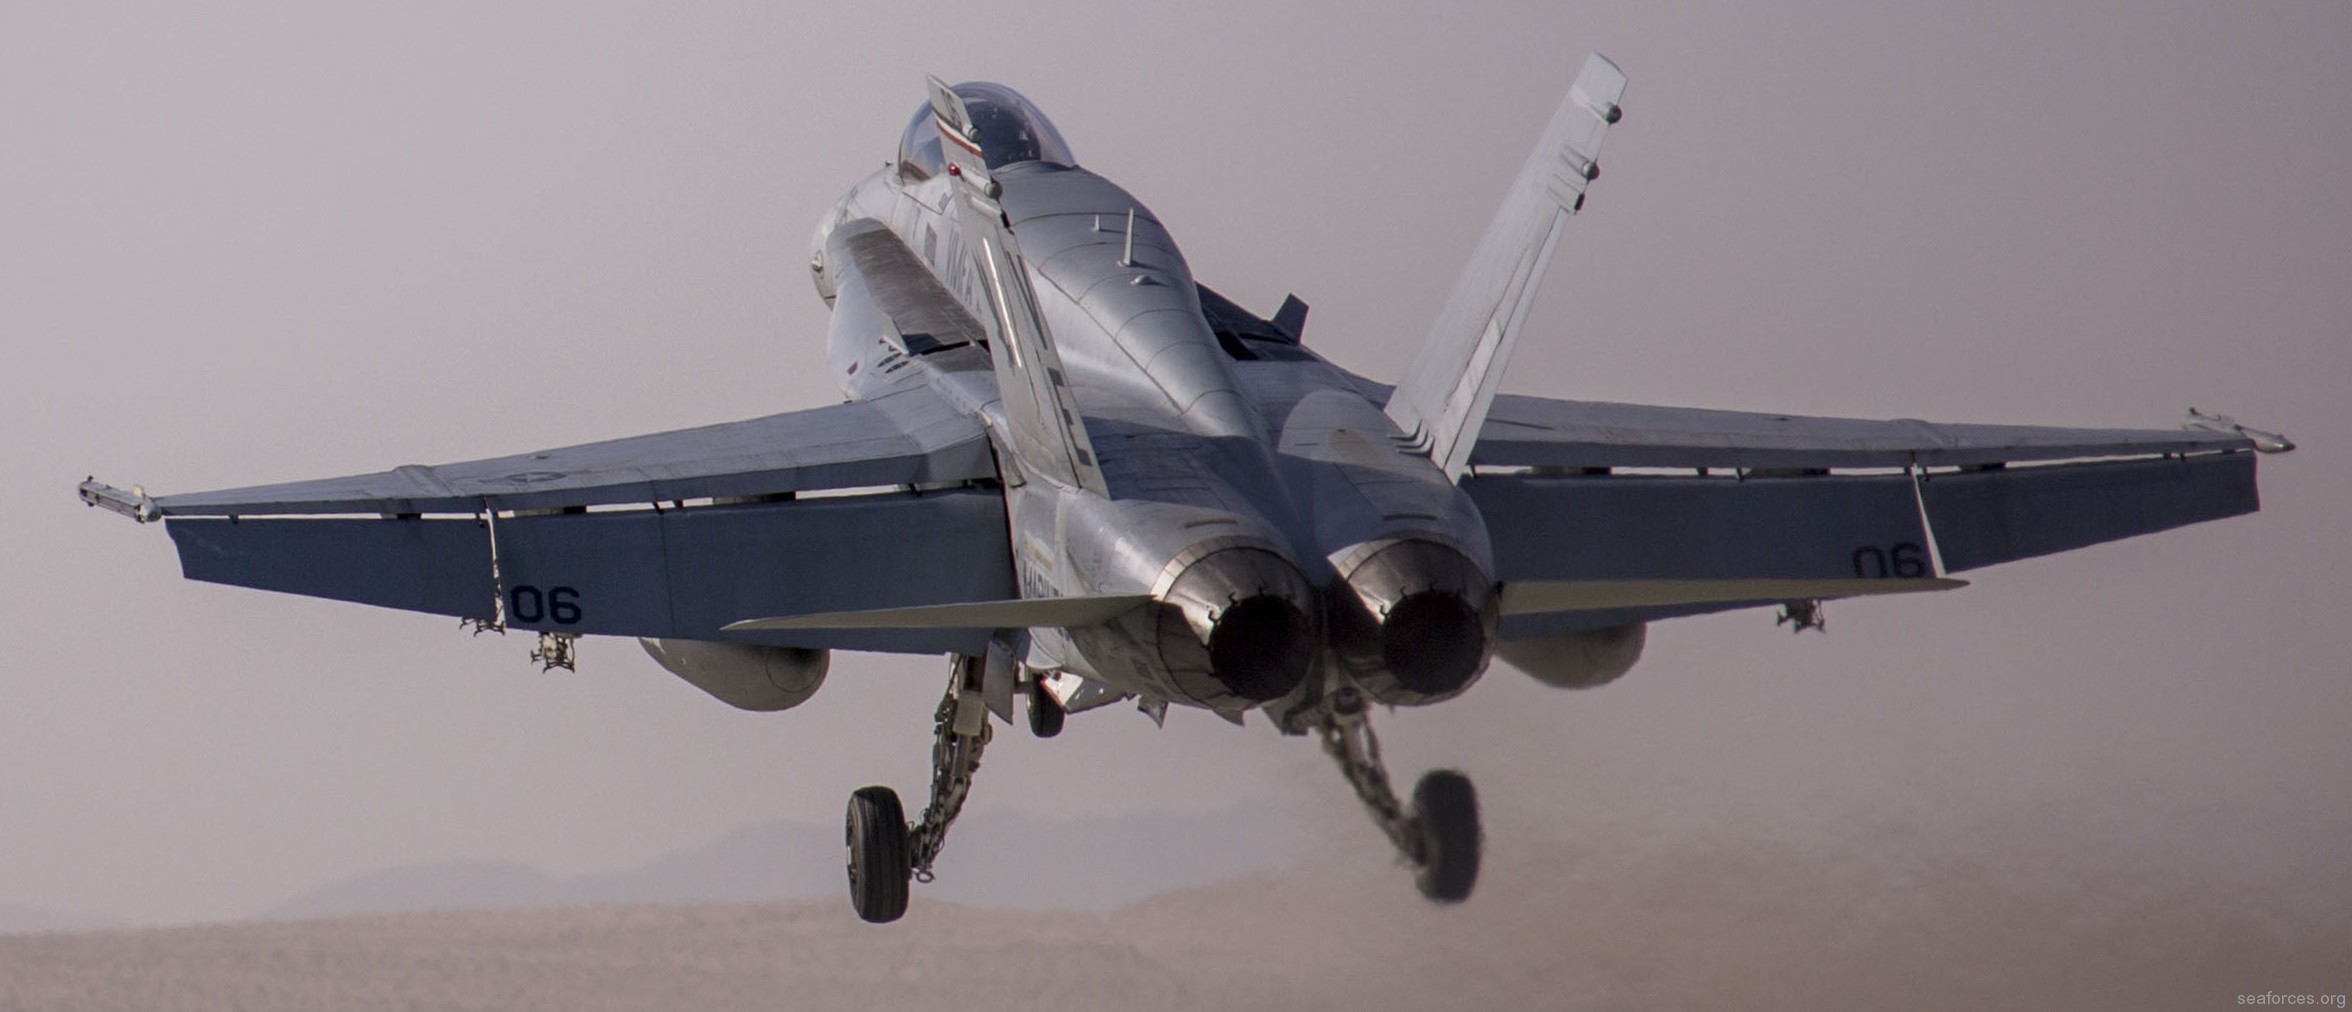 vmfa-115 silver eagles marine fighter attack squadron f/a-18a+ hornet 120